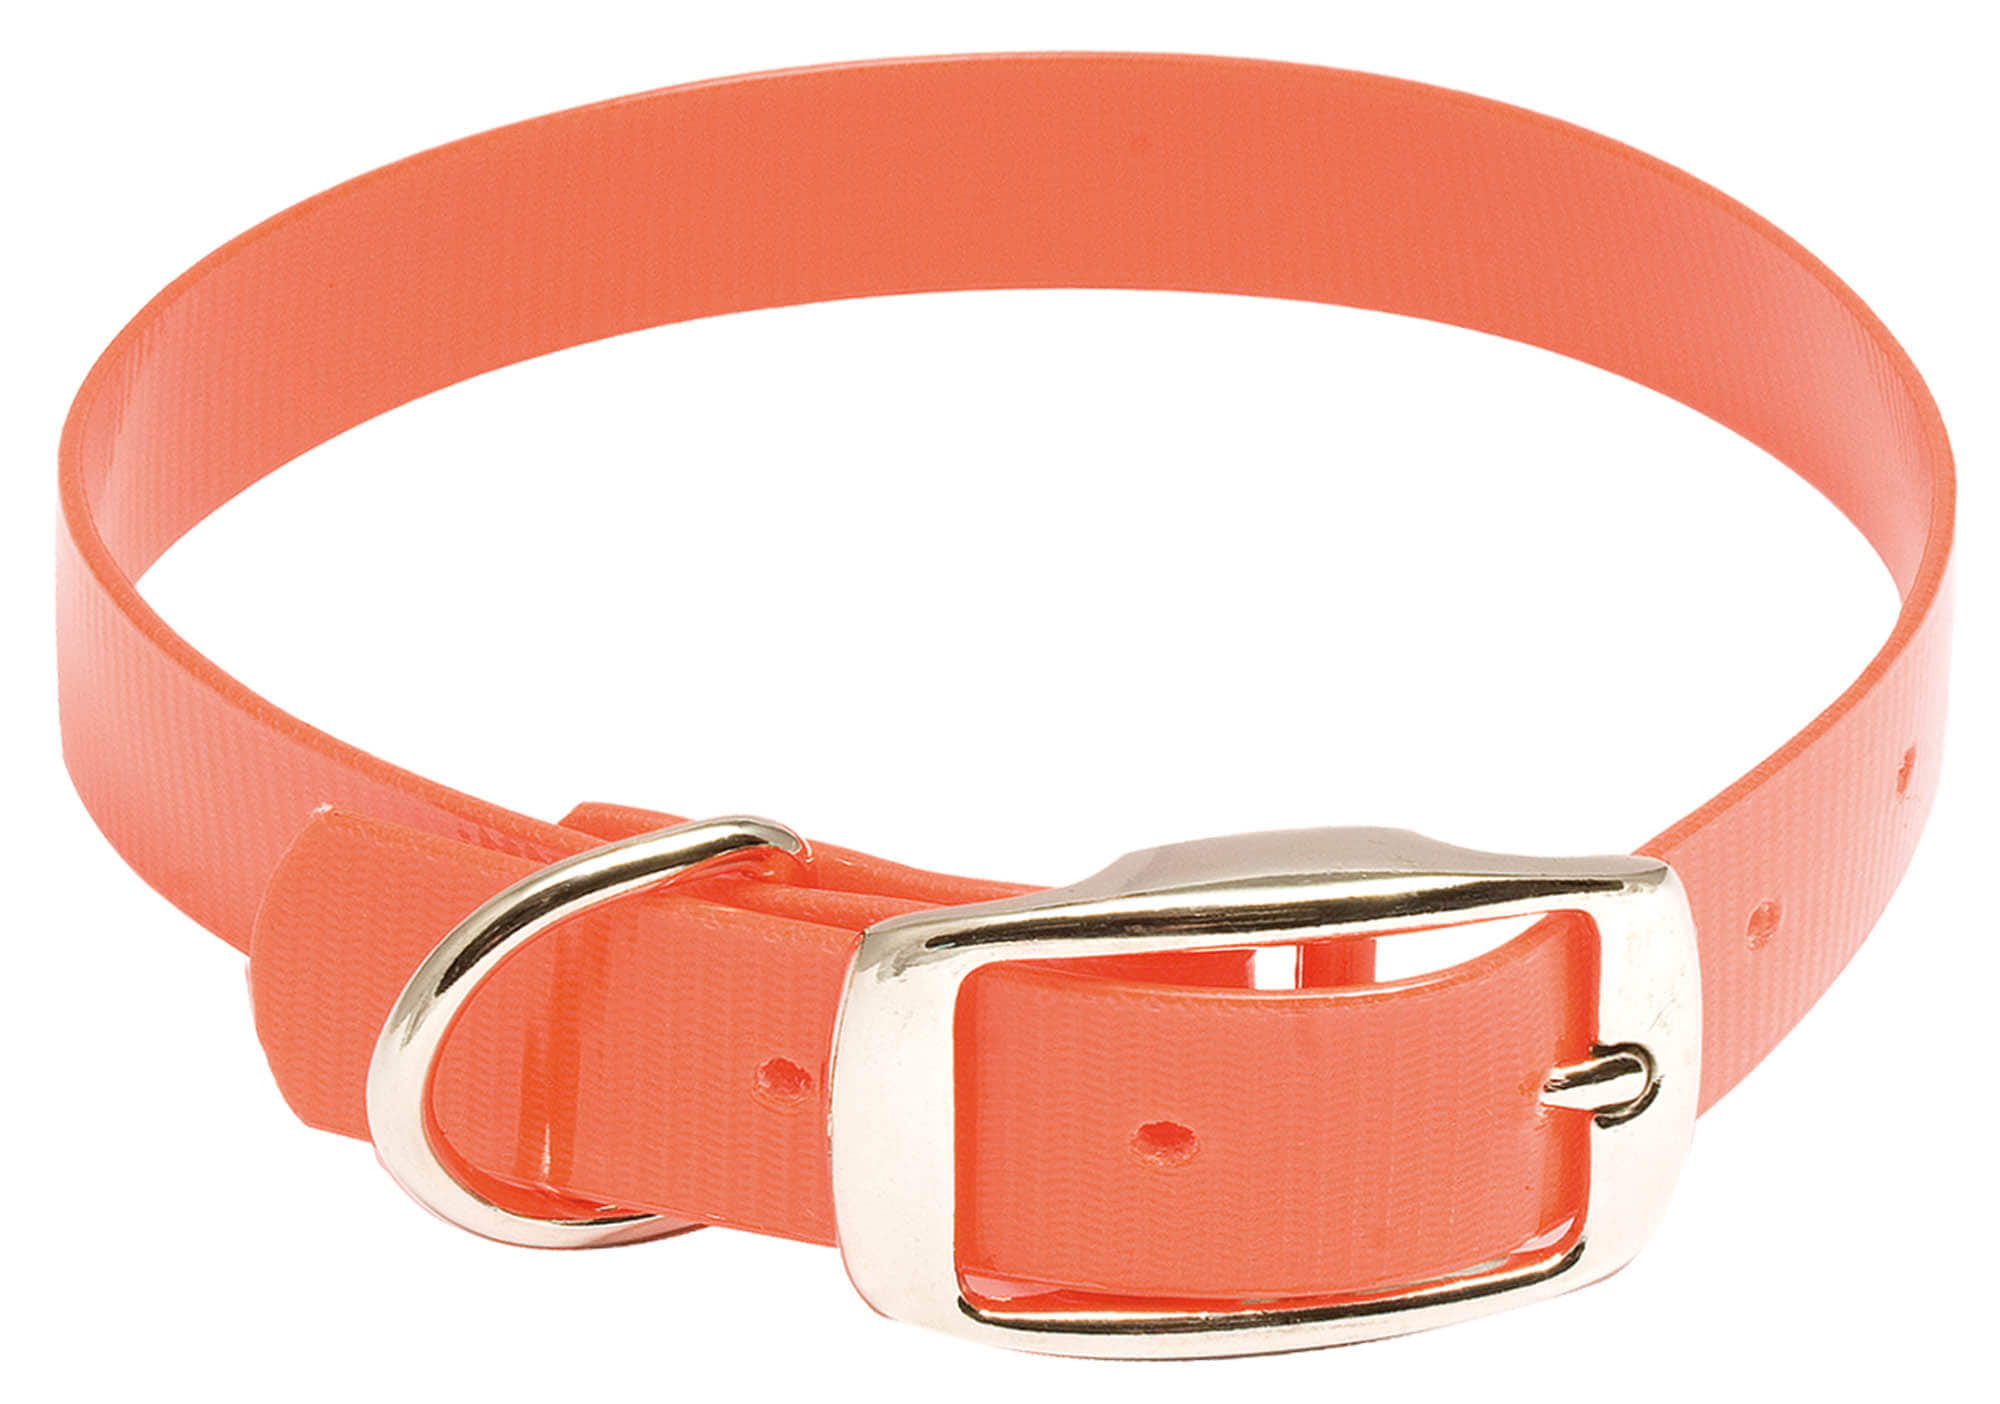 Collier pour chien Hiflex orange fluo - Country - Collier Hiflex - 27 cm